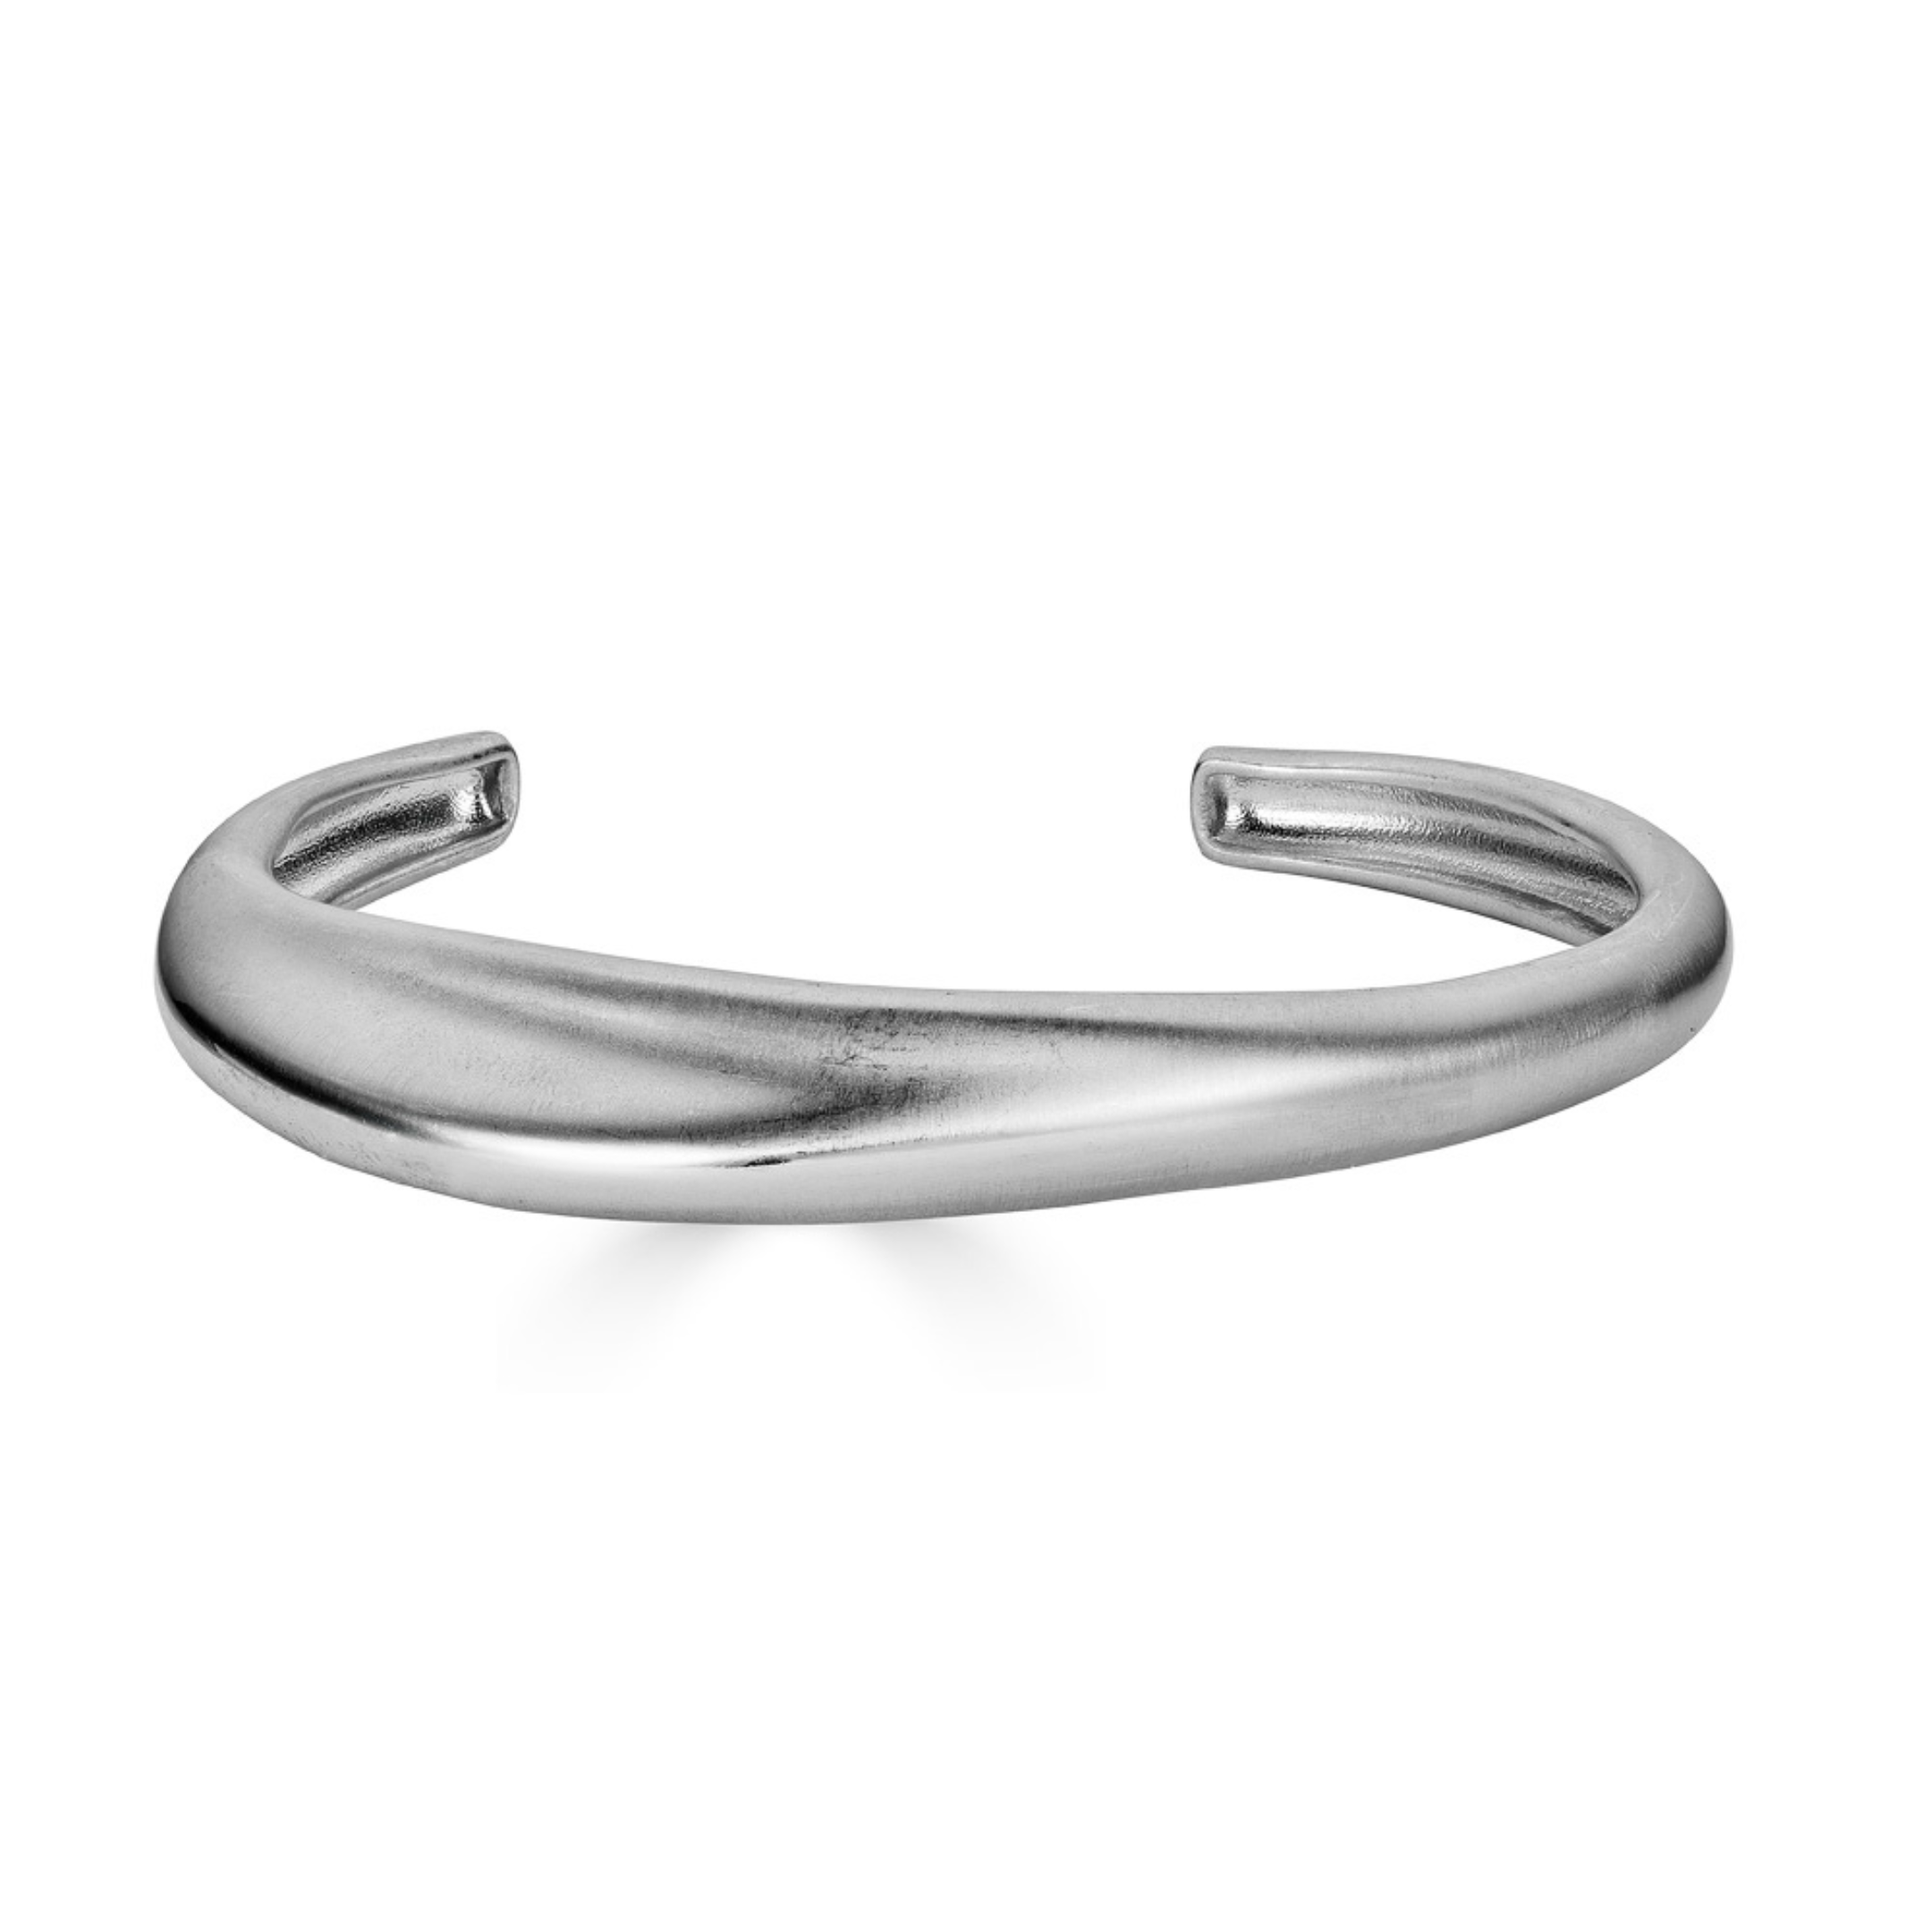 Hiba Cuff Bracelet in Sterling Silver, 9.5mm